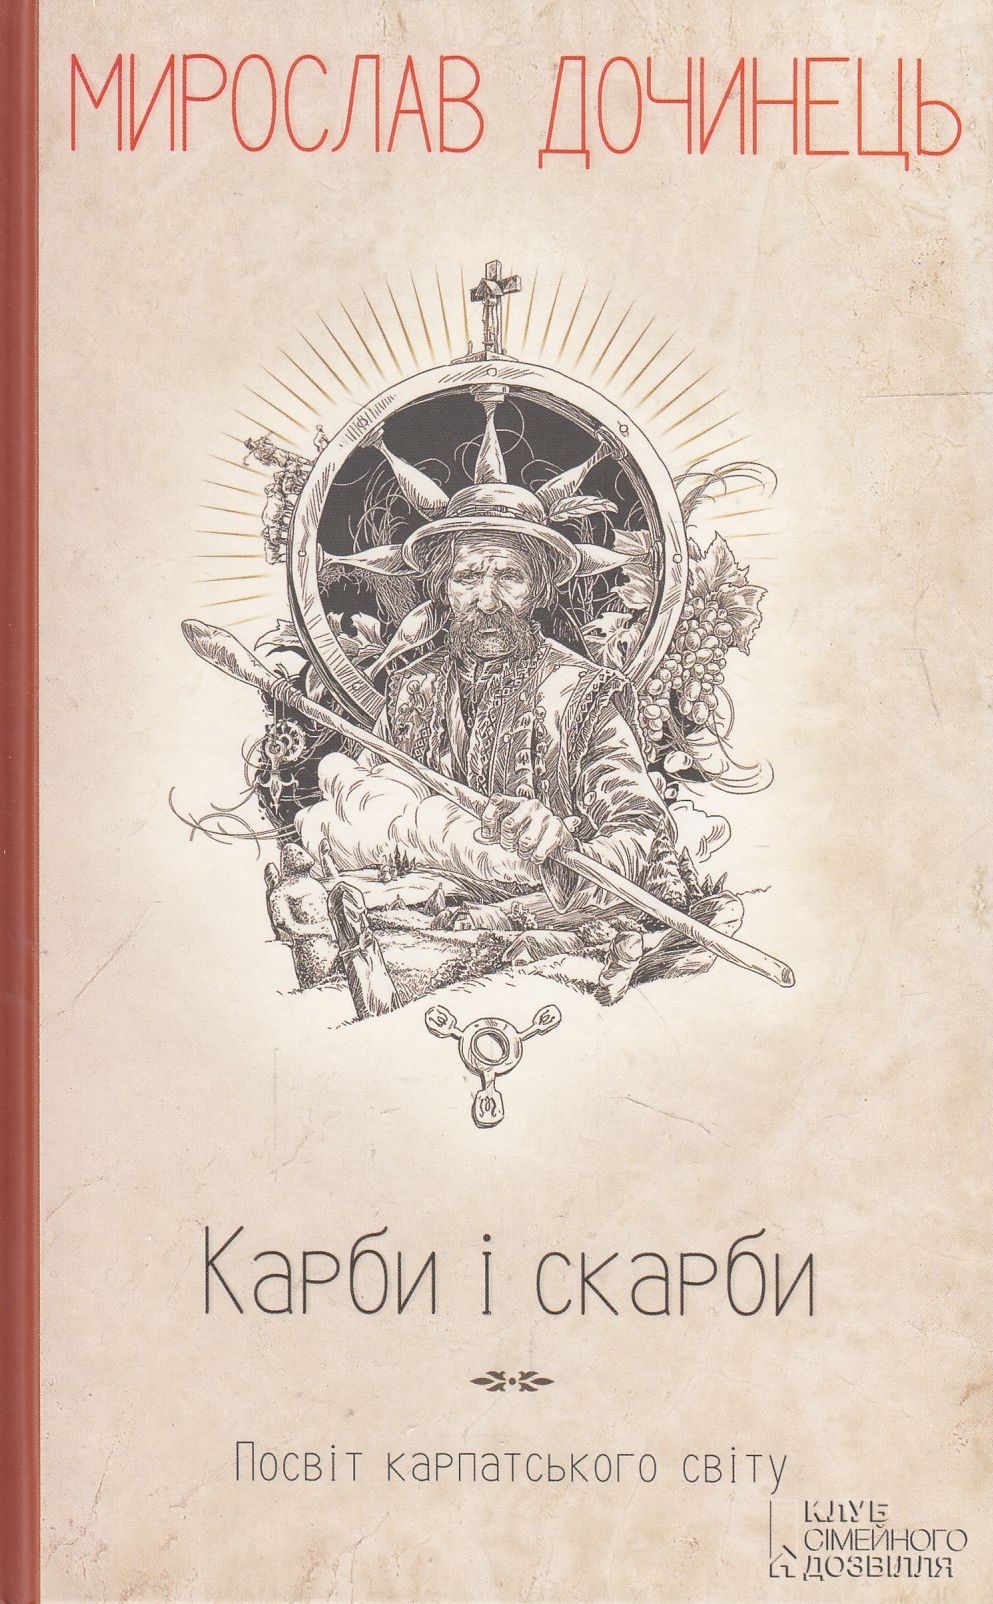 Продам книгу Мирослав Дочинець " Карби і скарби"